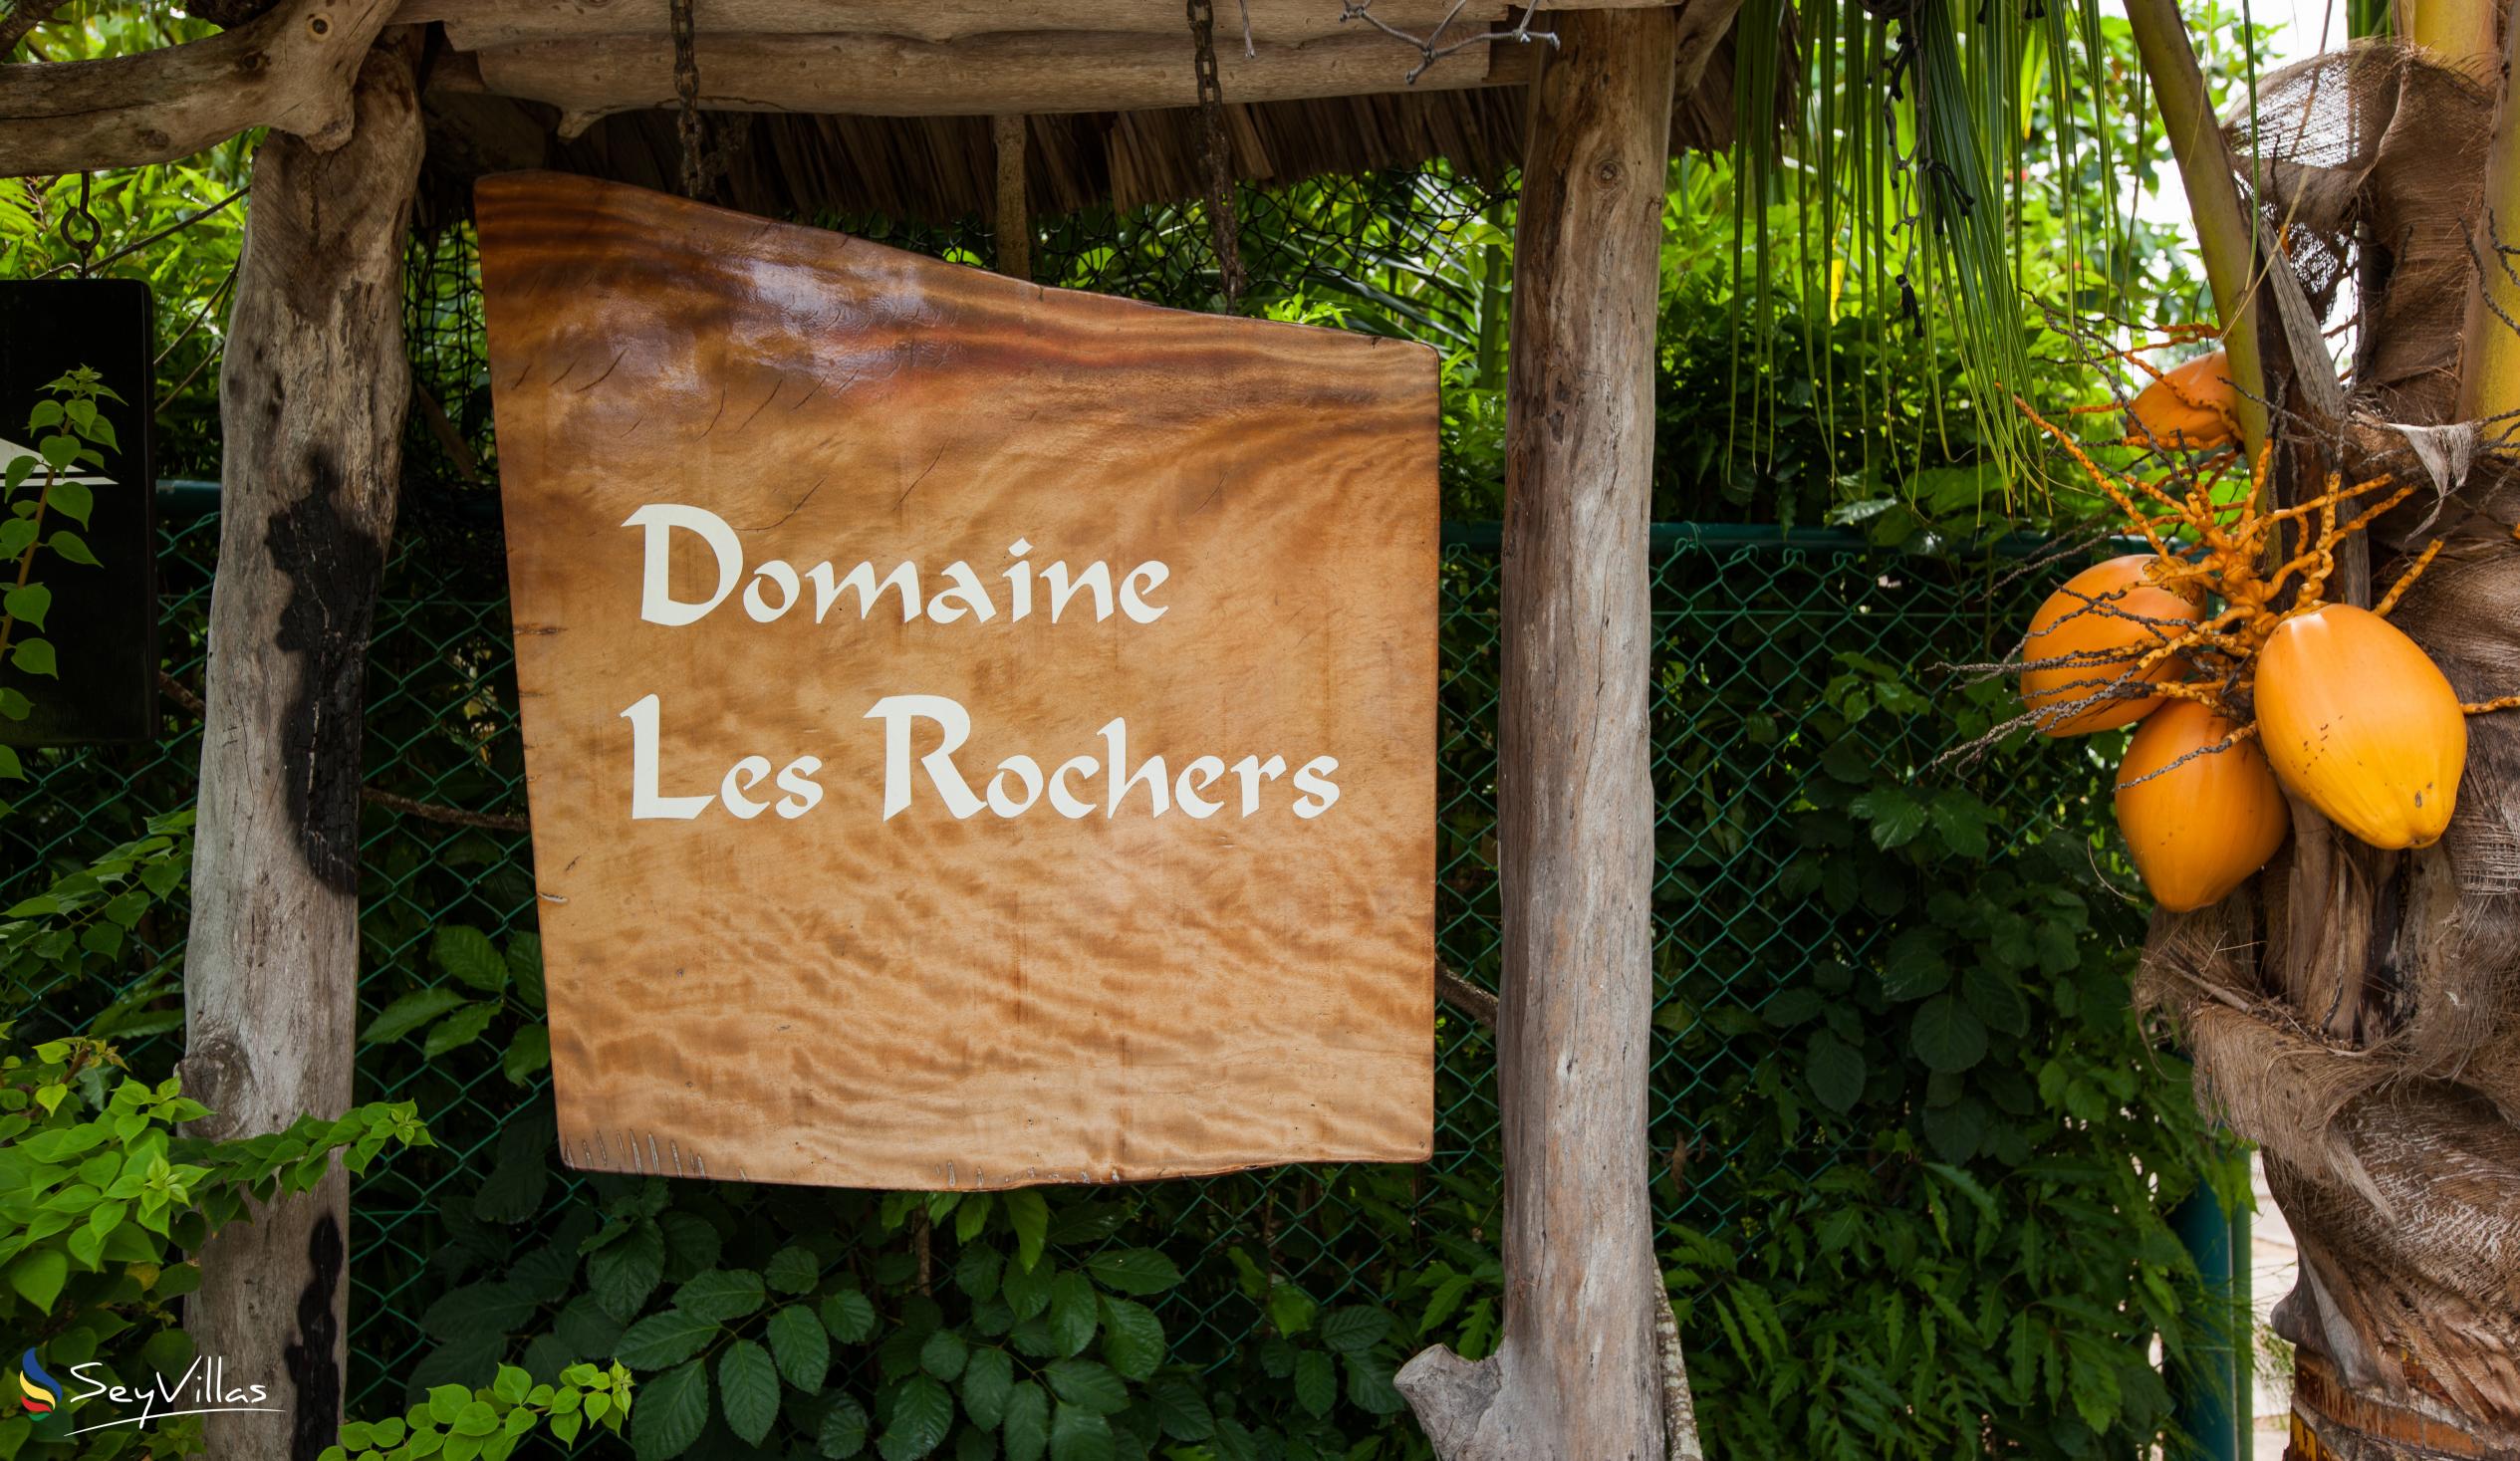 Photo 4: Domaine Les Rochers - Outdoor area - La Digue (Seychelles)